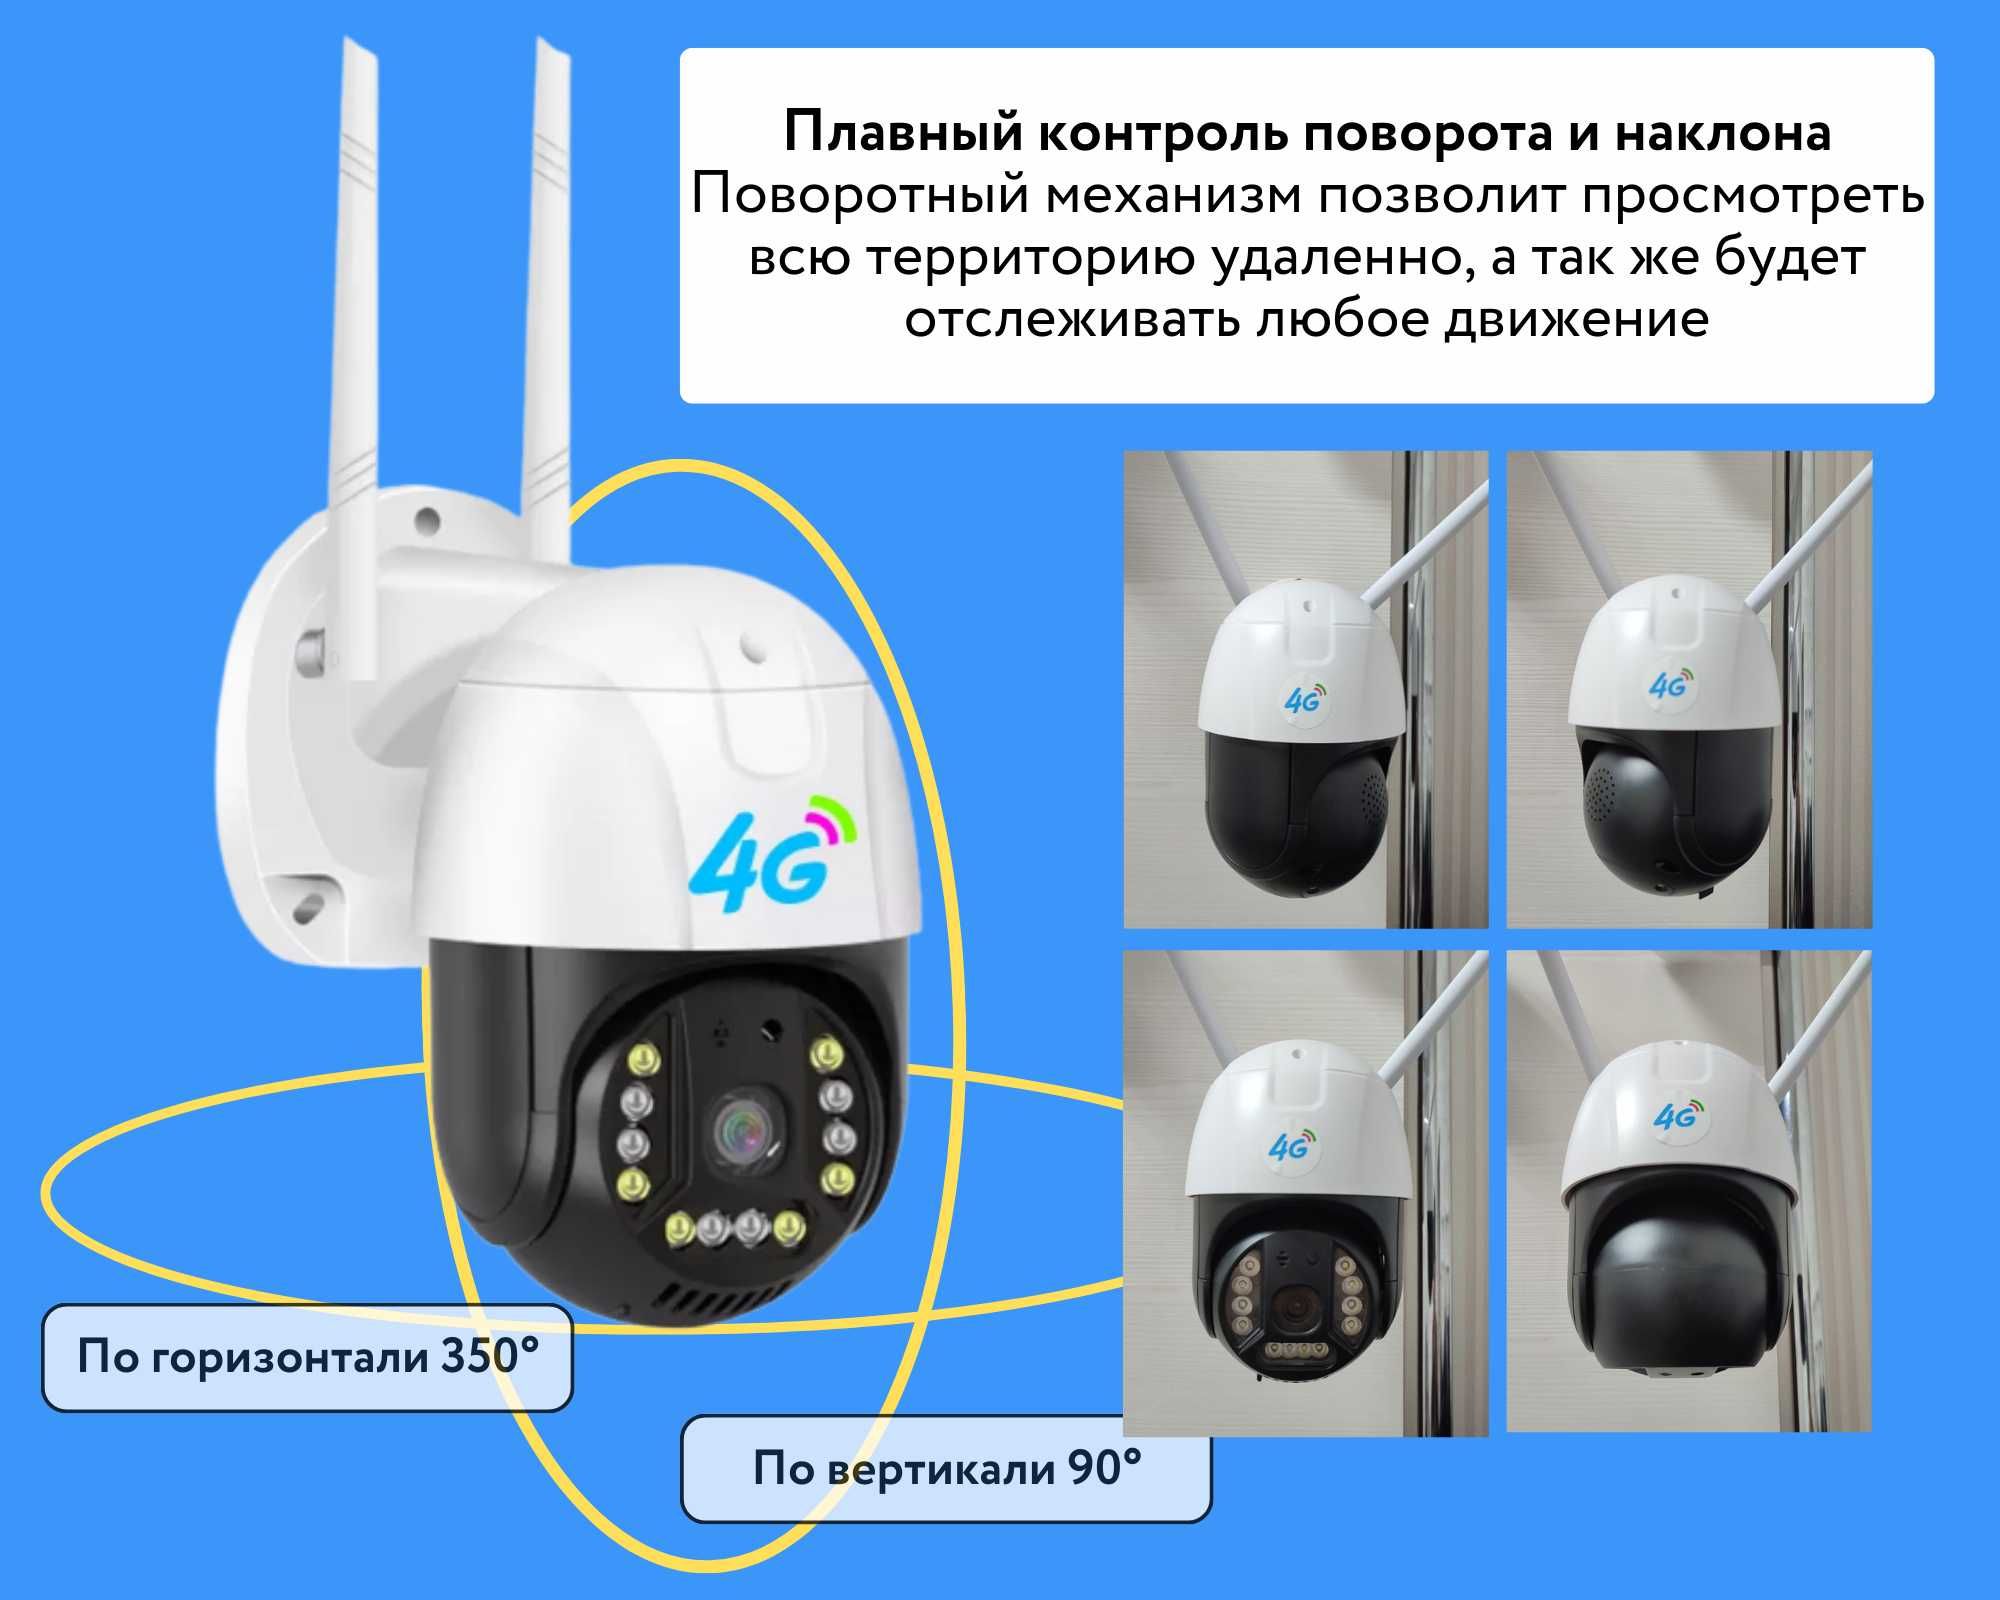 3 МП 4G камеры видеонаблюдения